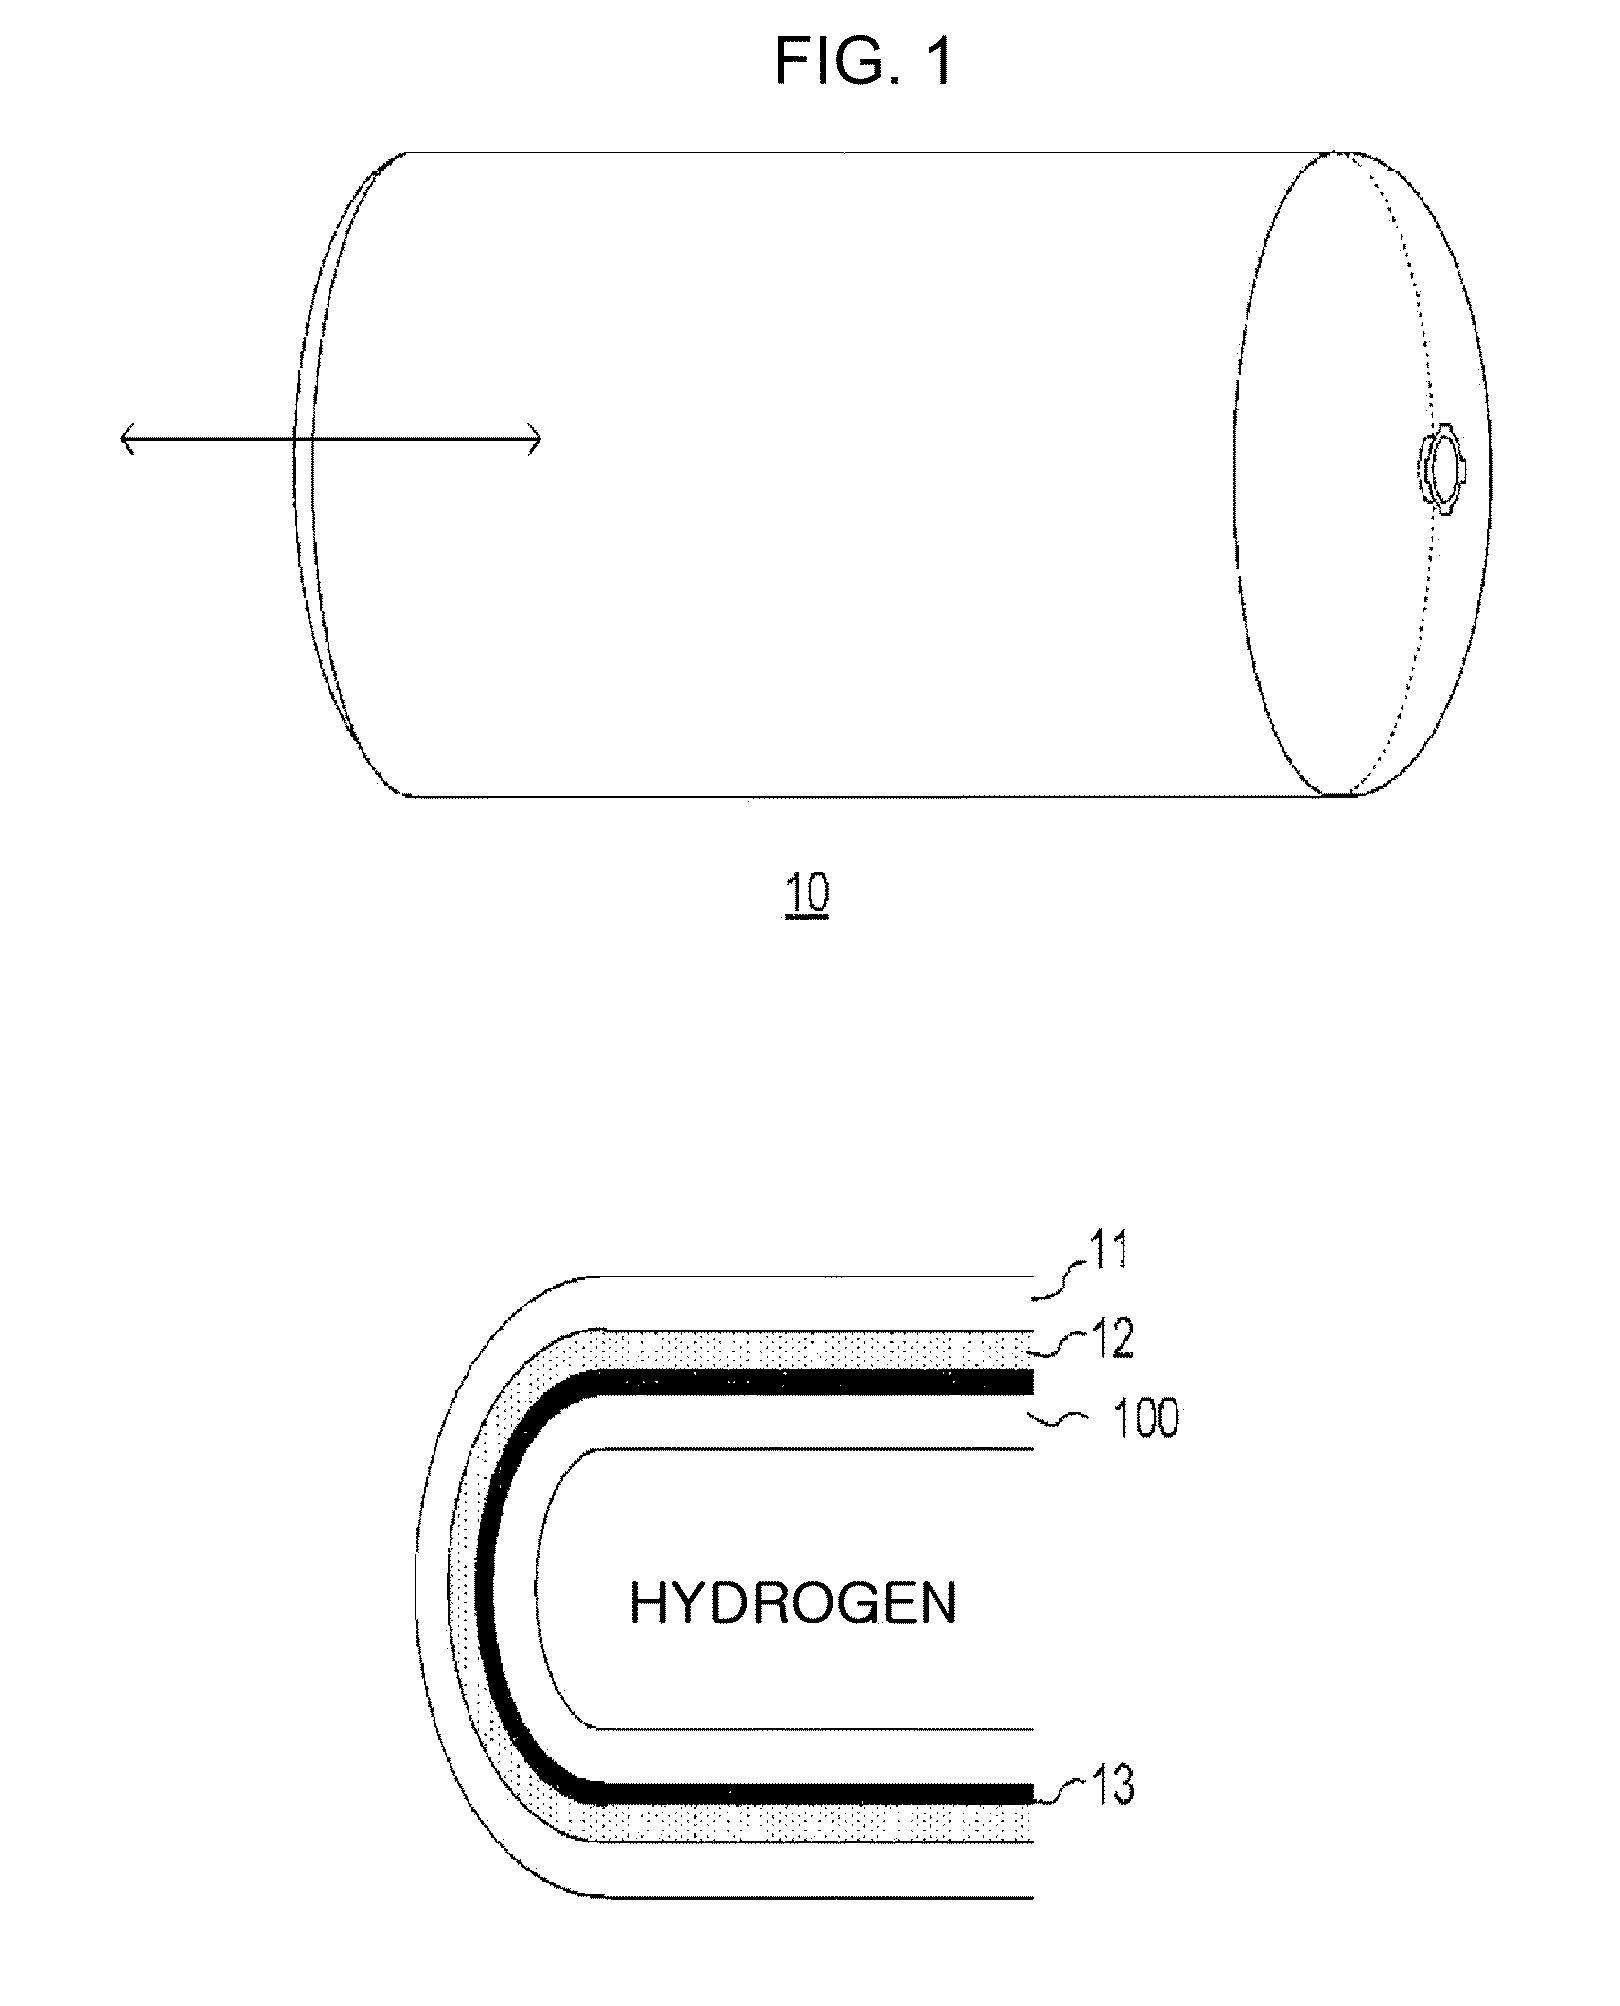 Hydrogen penetration barrier